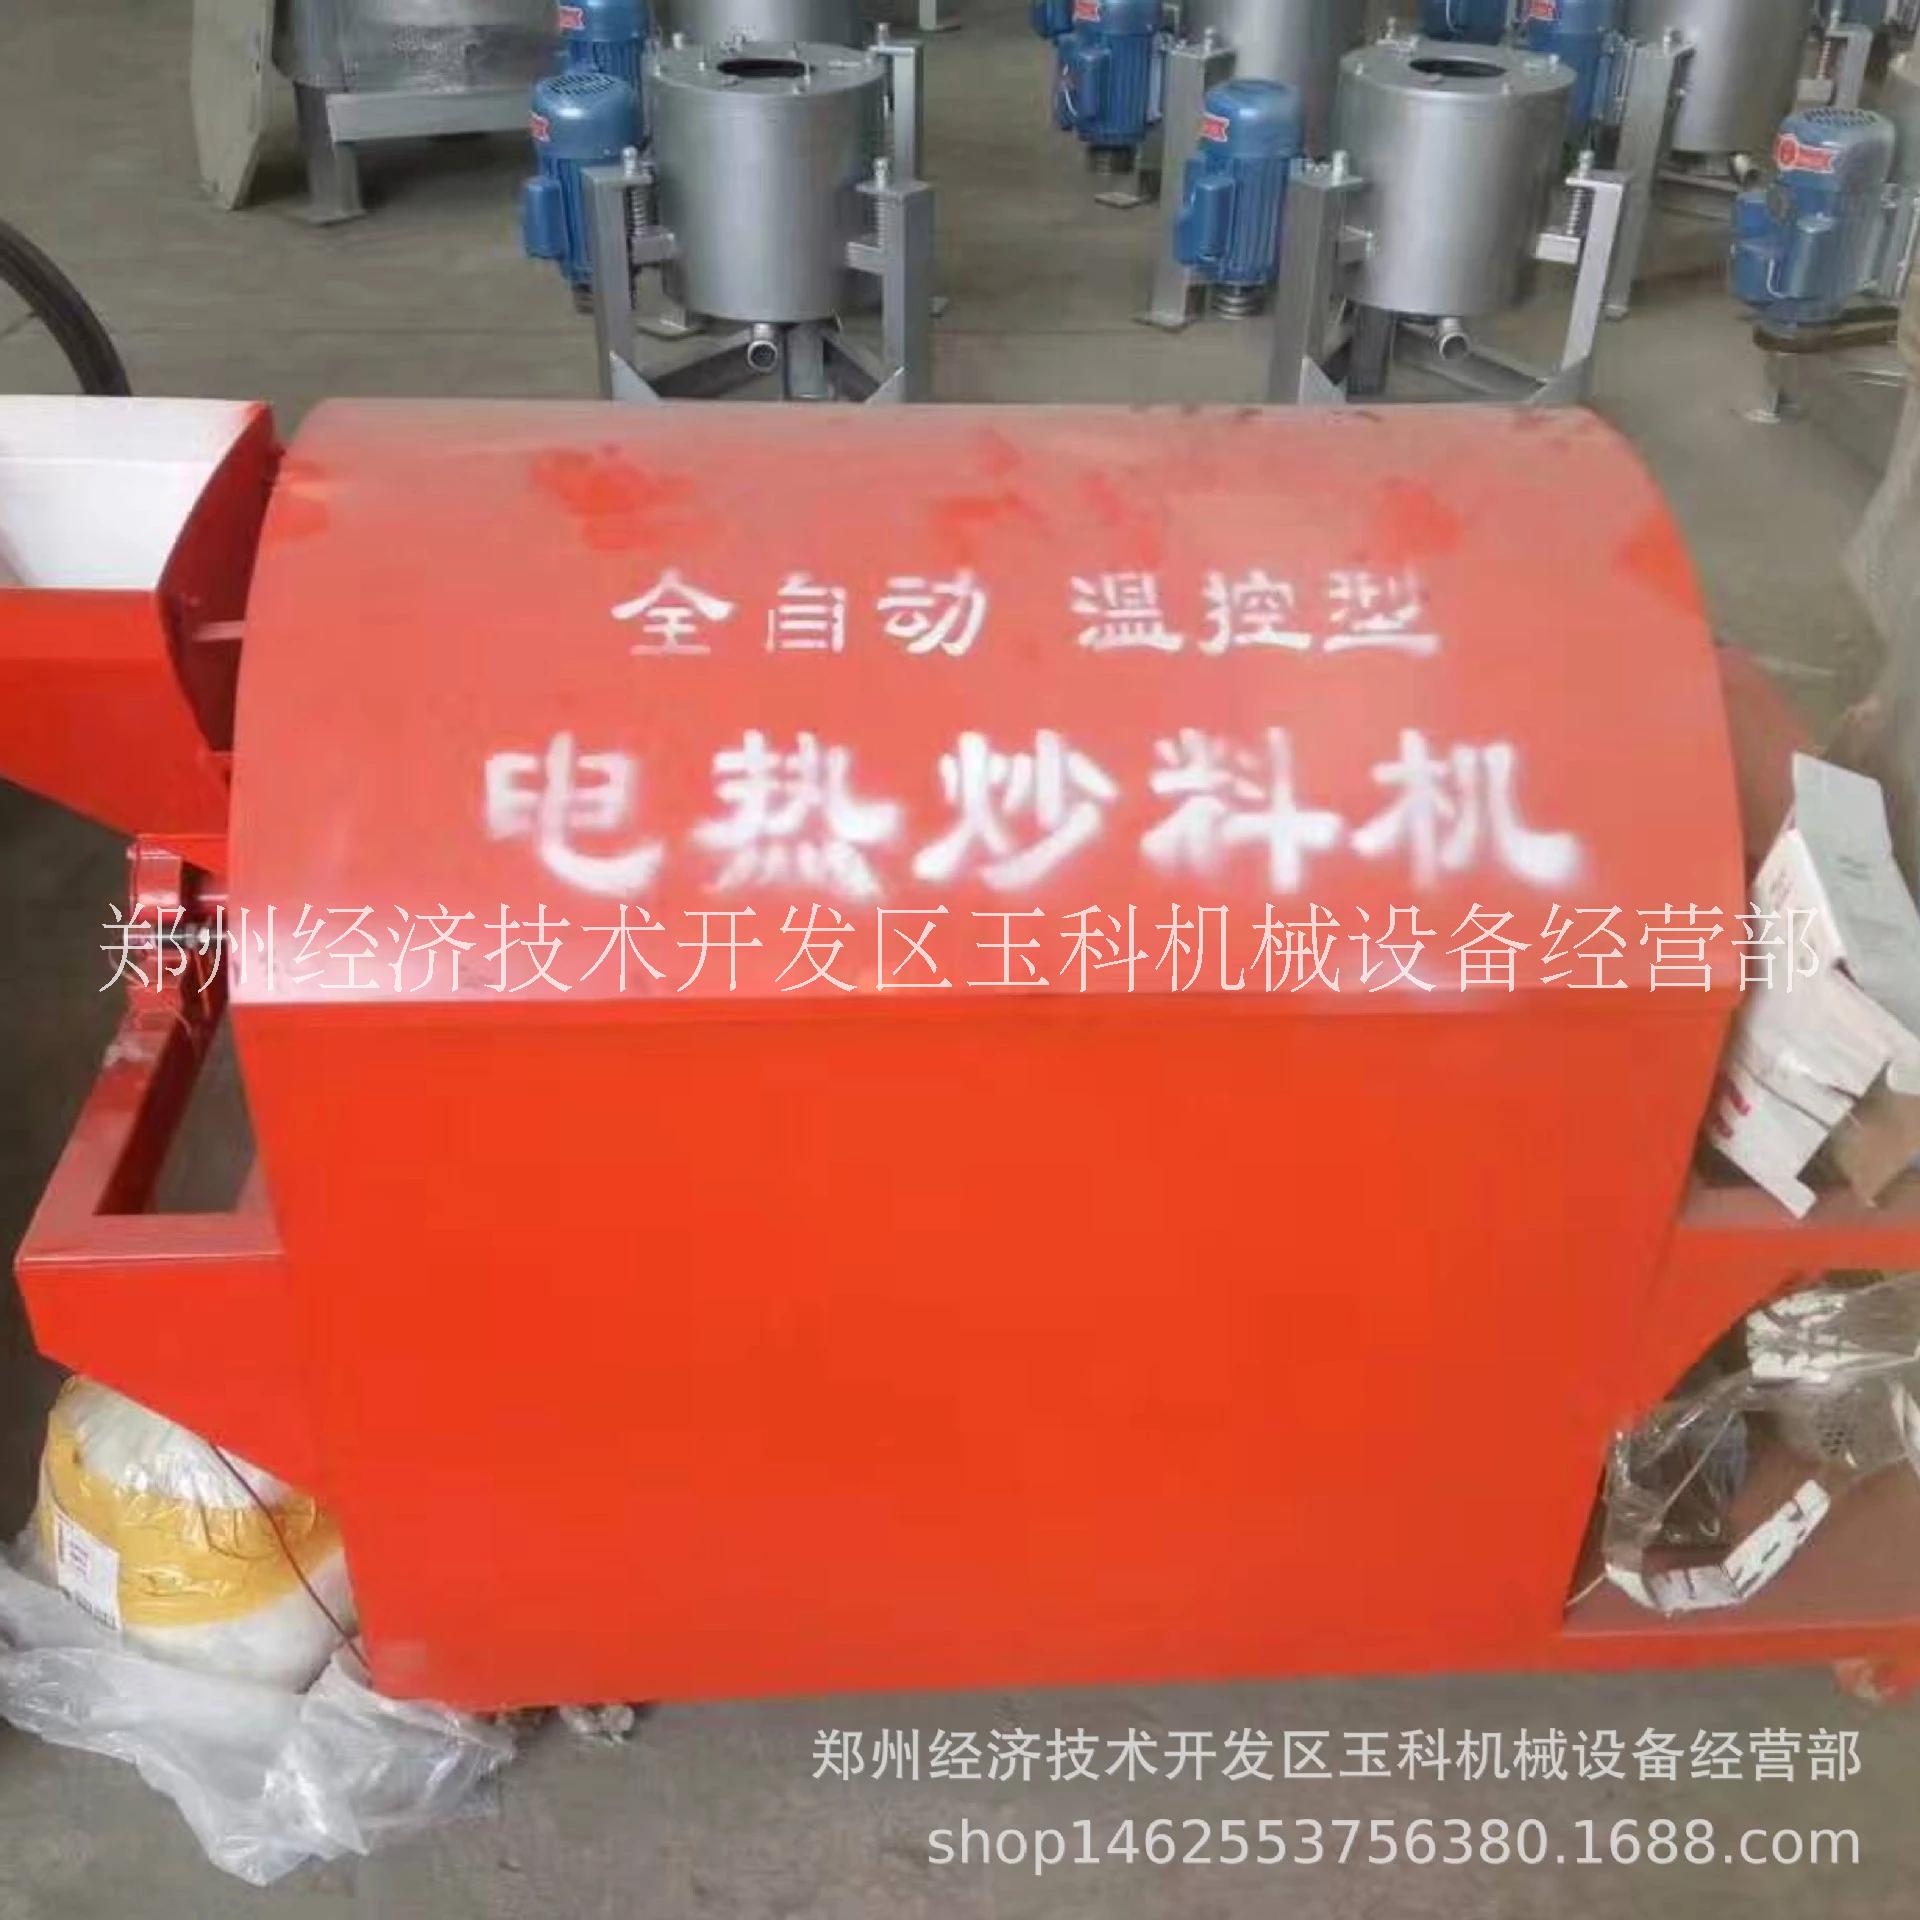 郑州经济技术开发区玉科机械设备经营部